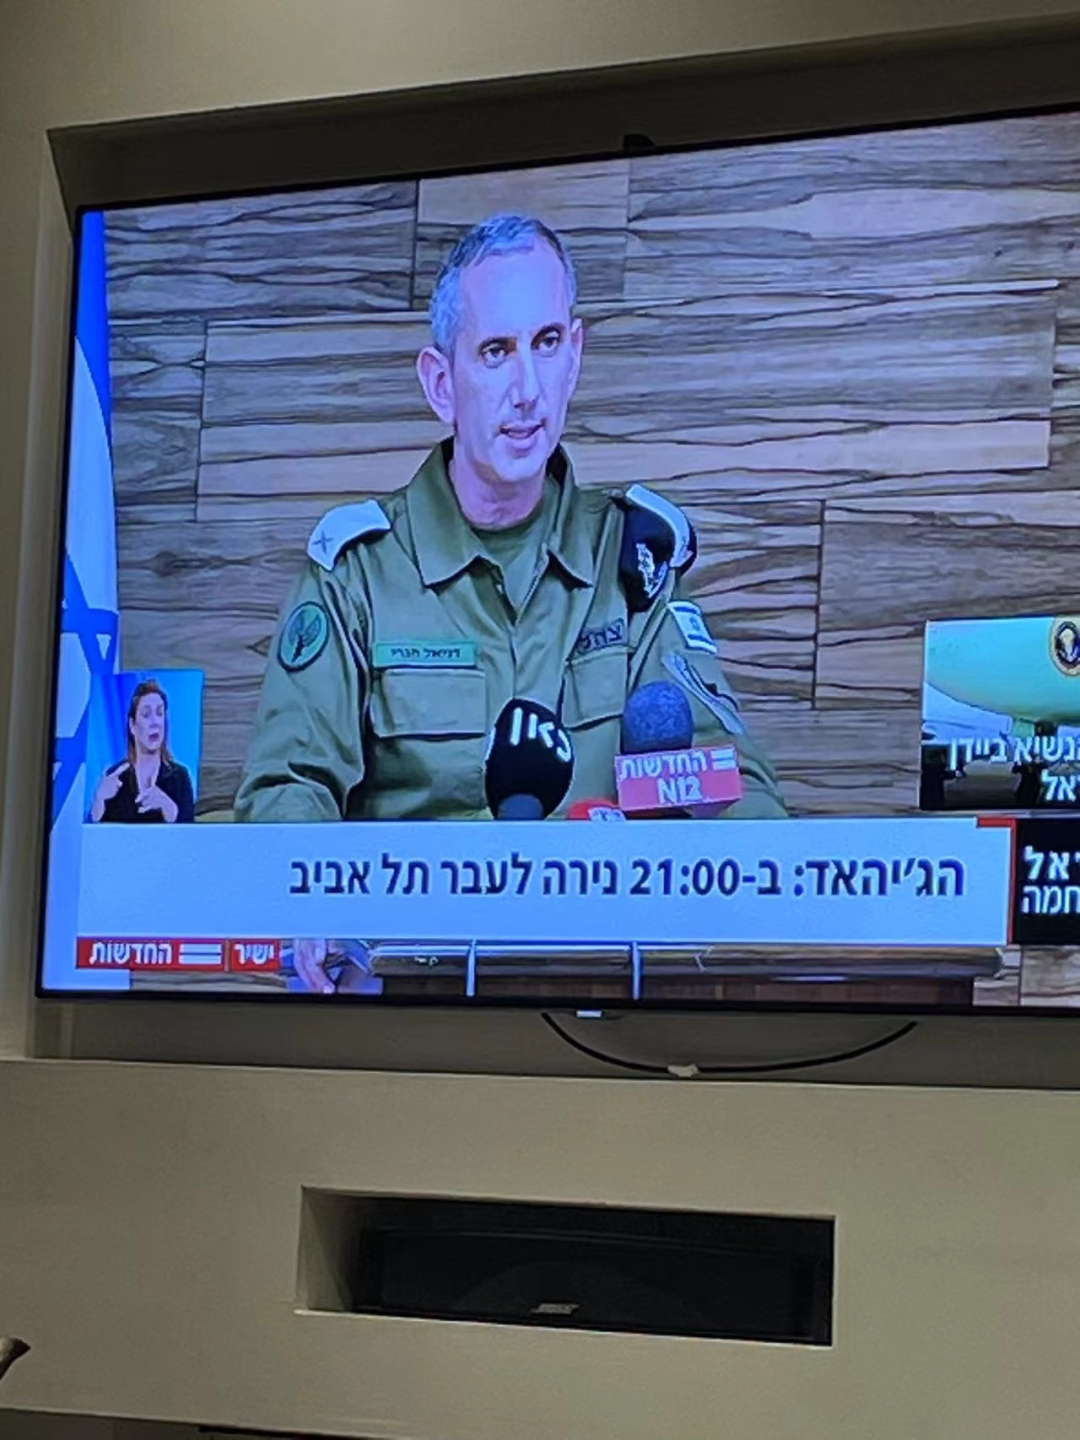 以色列电视台画面：“圣战，将在晚上九点向特拉维夫开火。”/受访者供图